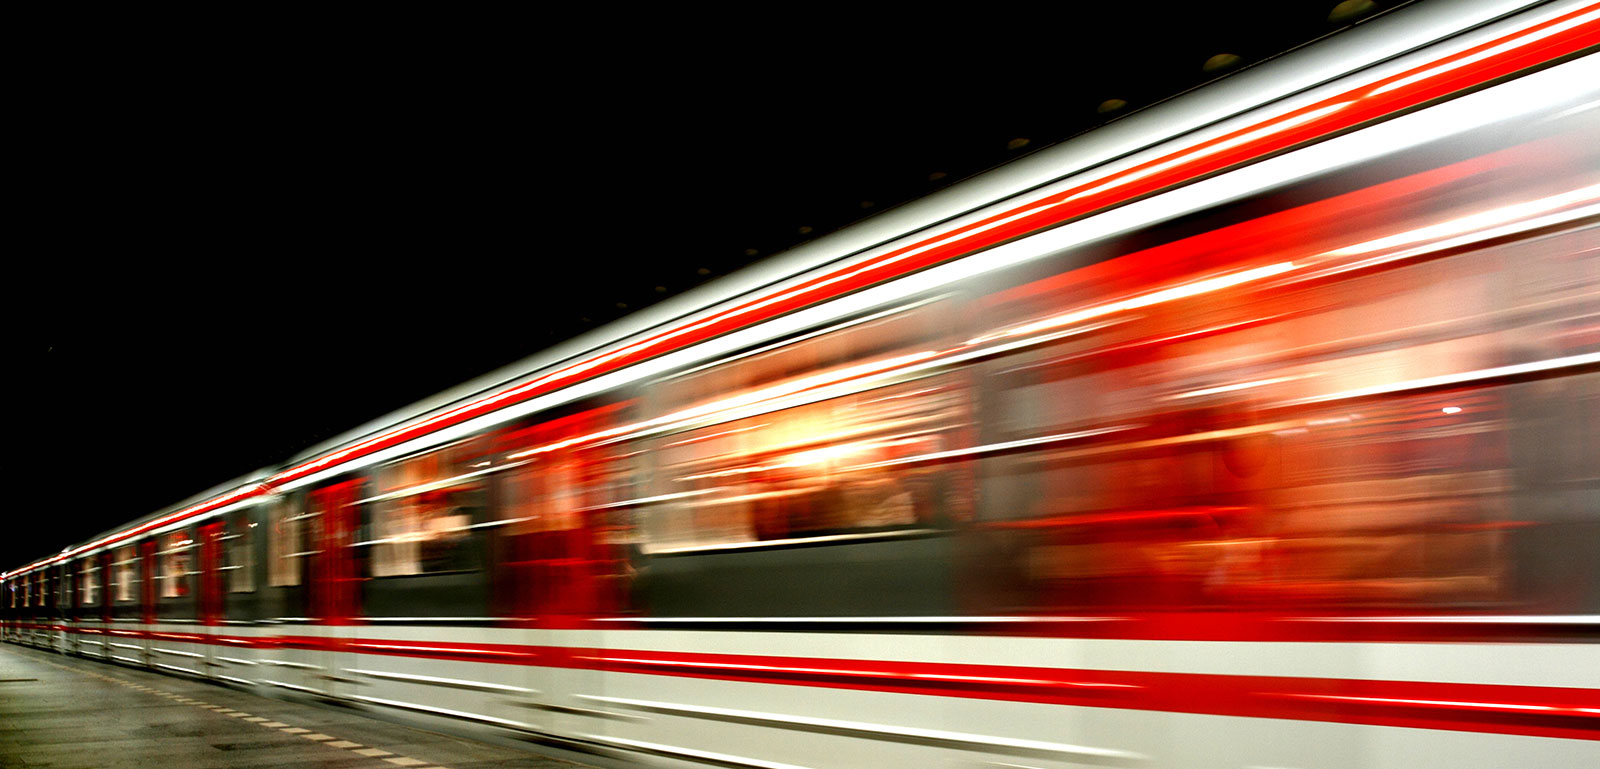 Blurred Subway Train